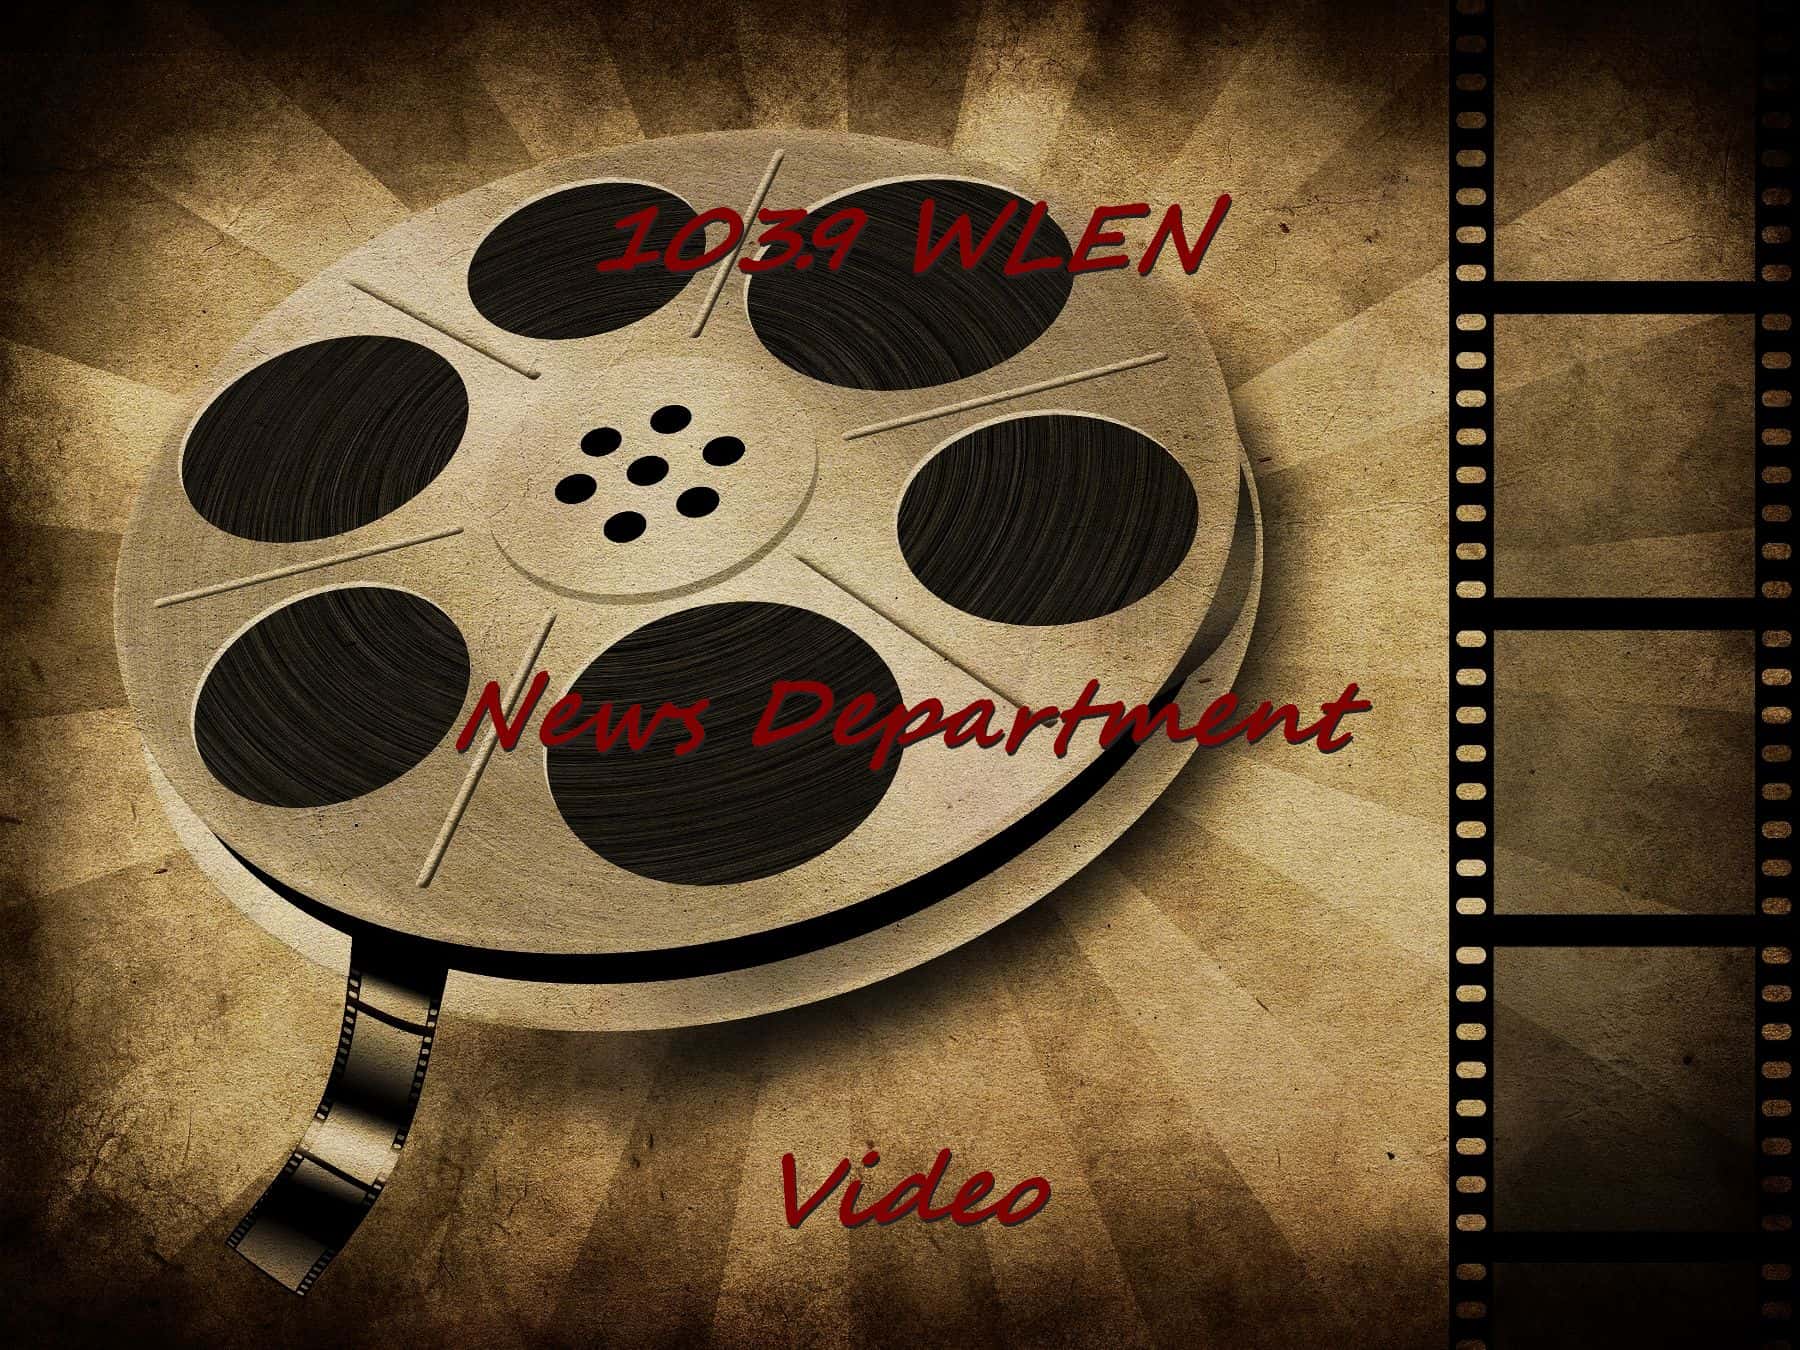 wlen-news-department-video-2